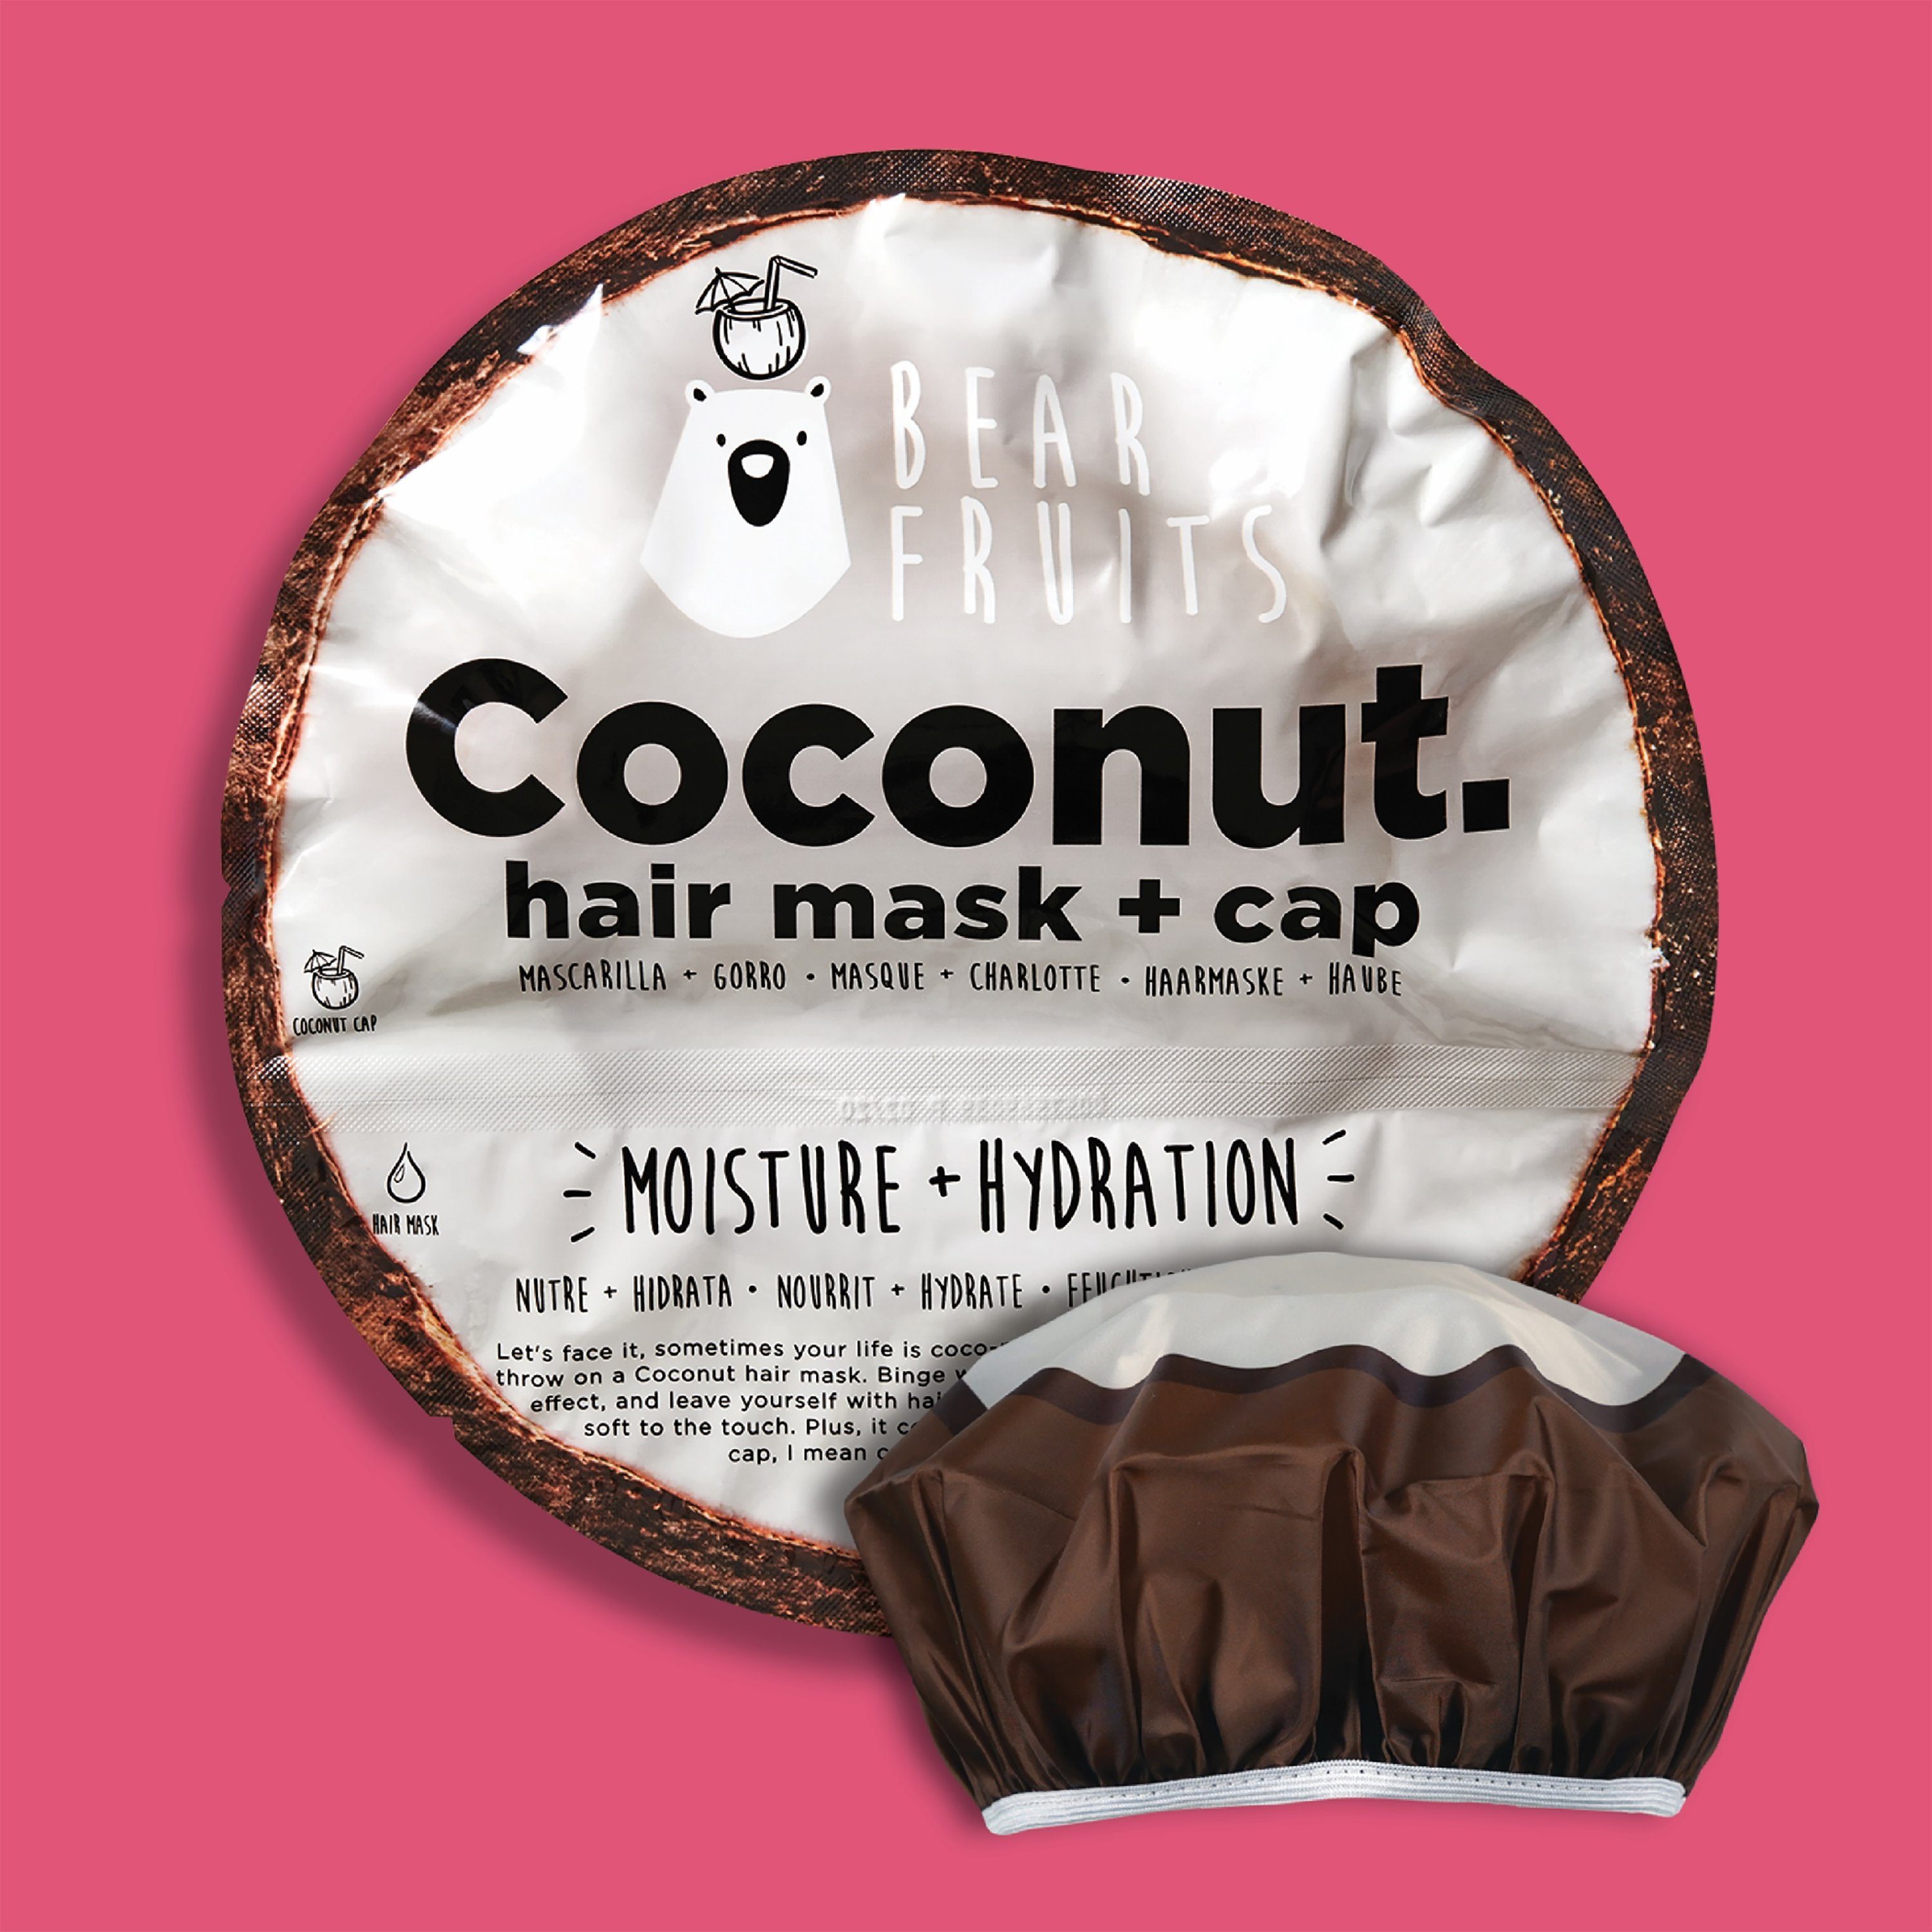 Bear Fruits - Haarkur Coconut cap Hair + mask